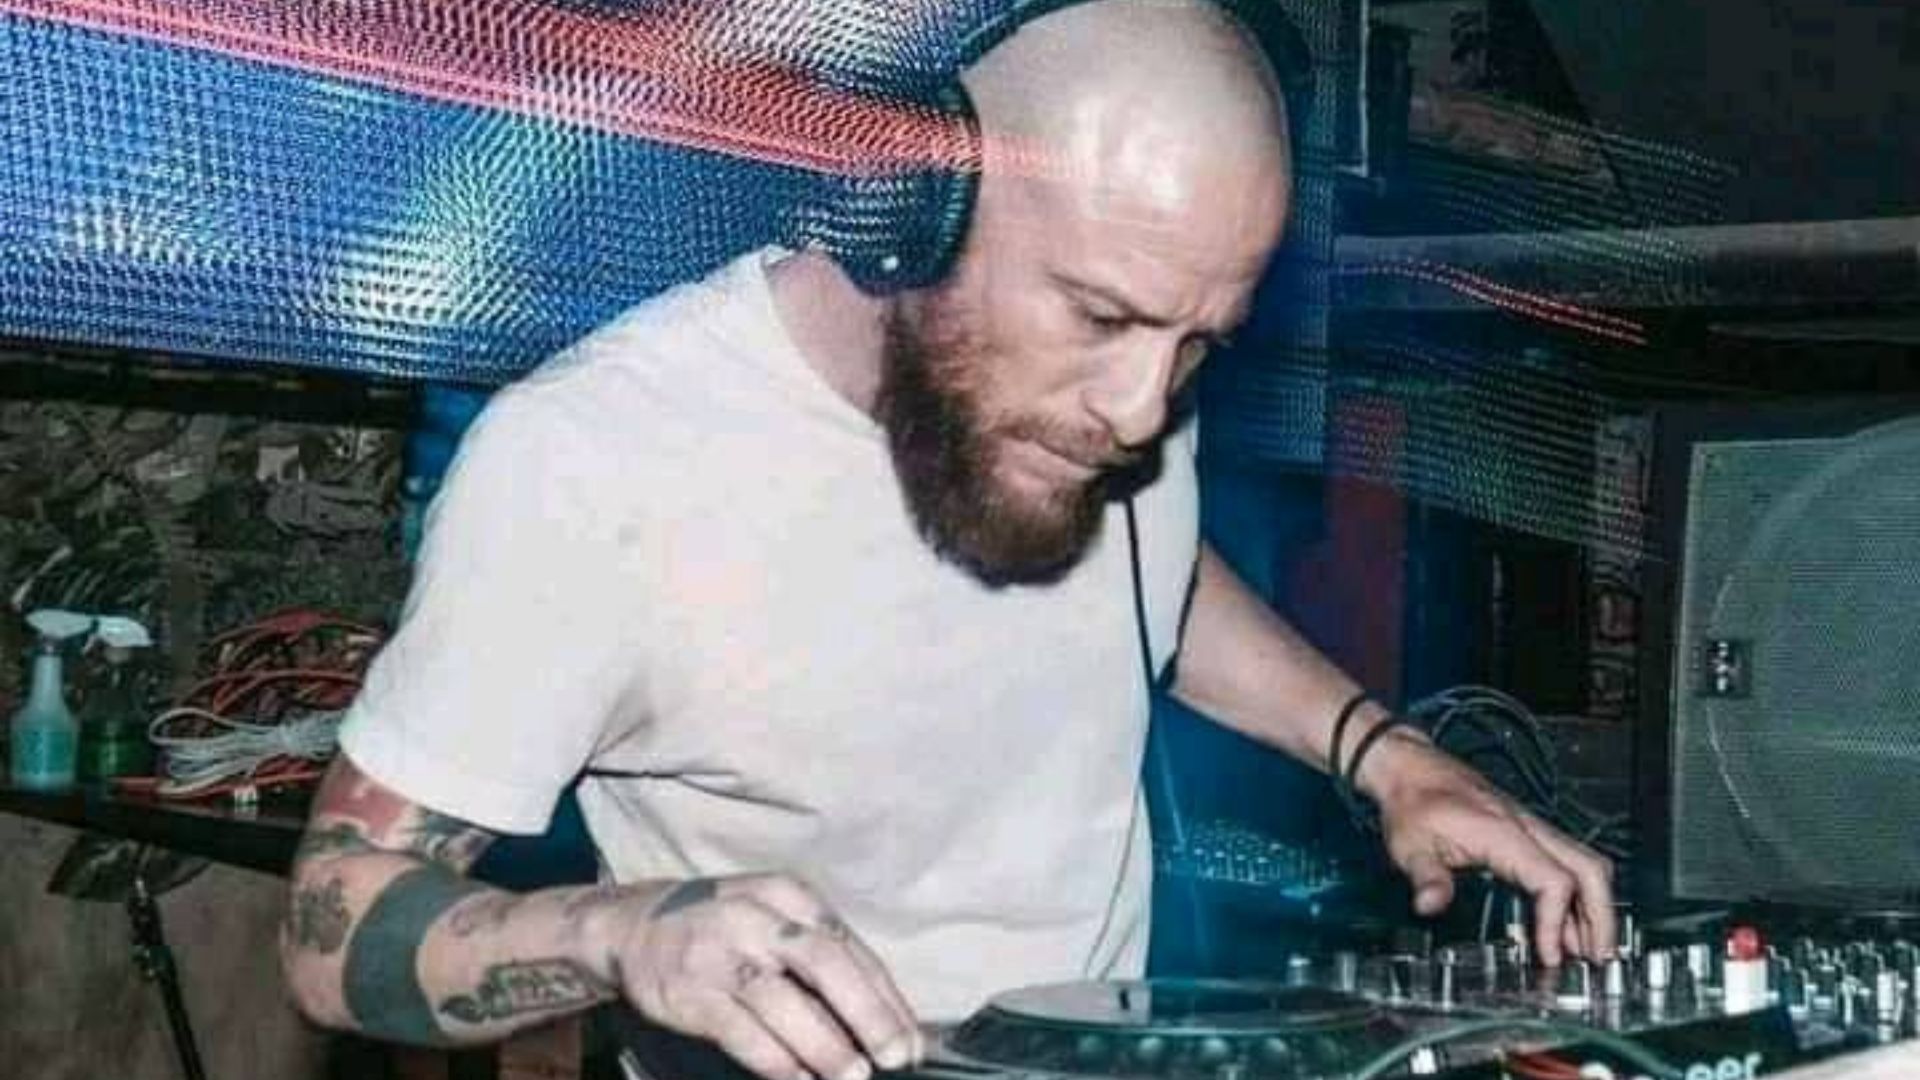 DJ Tiko falleció a los 39 años en el recorrido de Tijuana a la frontera sur de EE.UU, según varios reportes de amigos y allegados en redes sociales